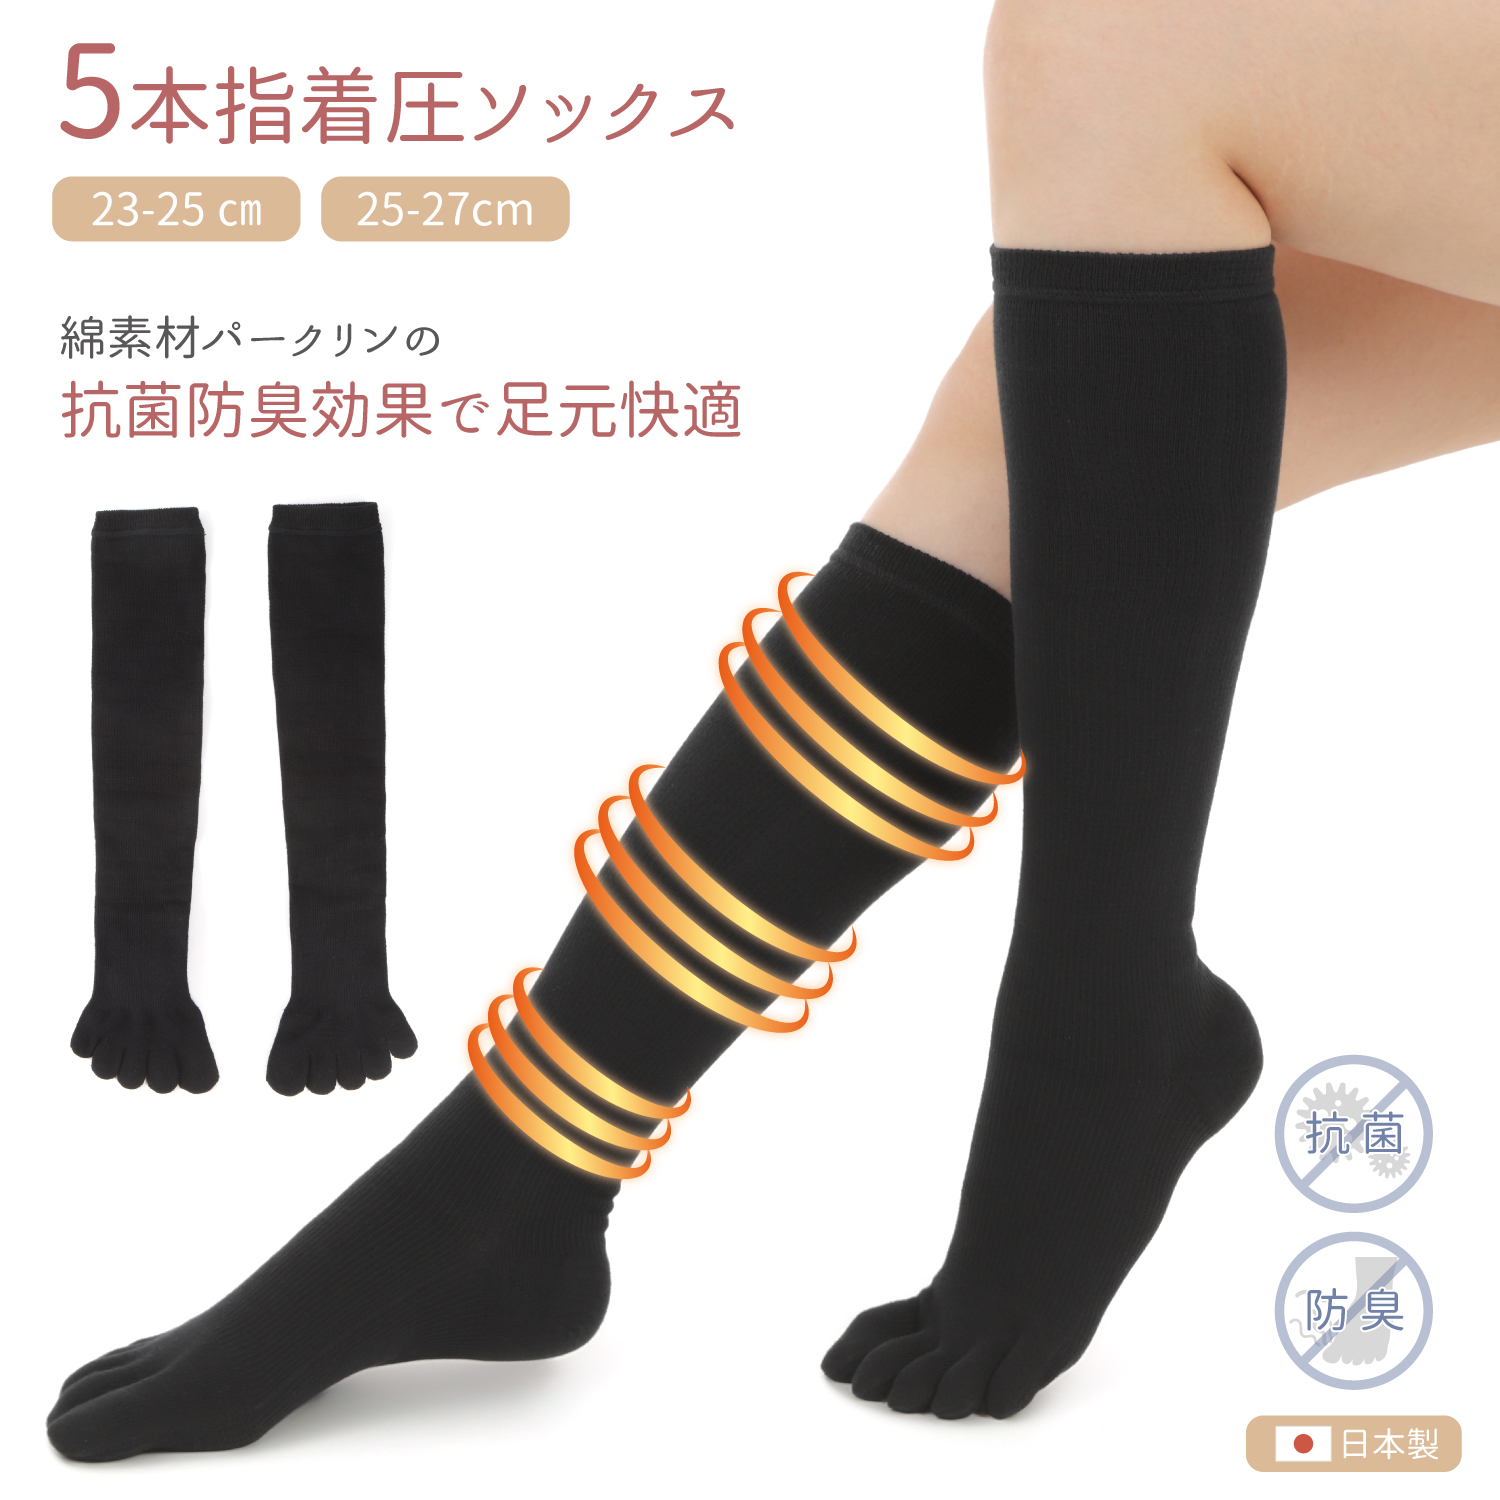 5本指の商品一覧 - e-socks